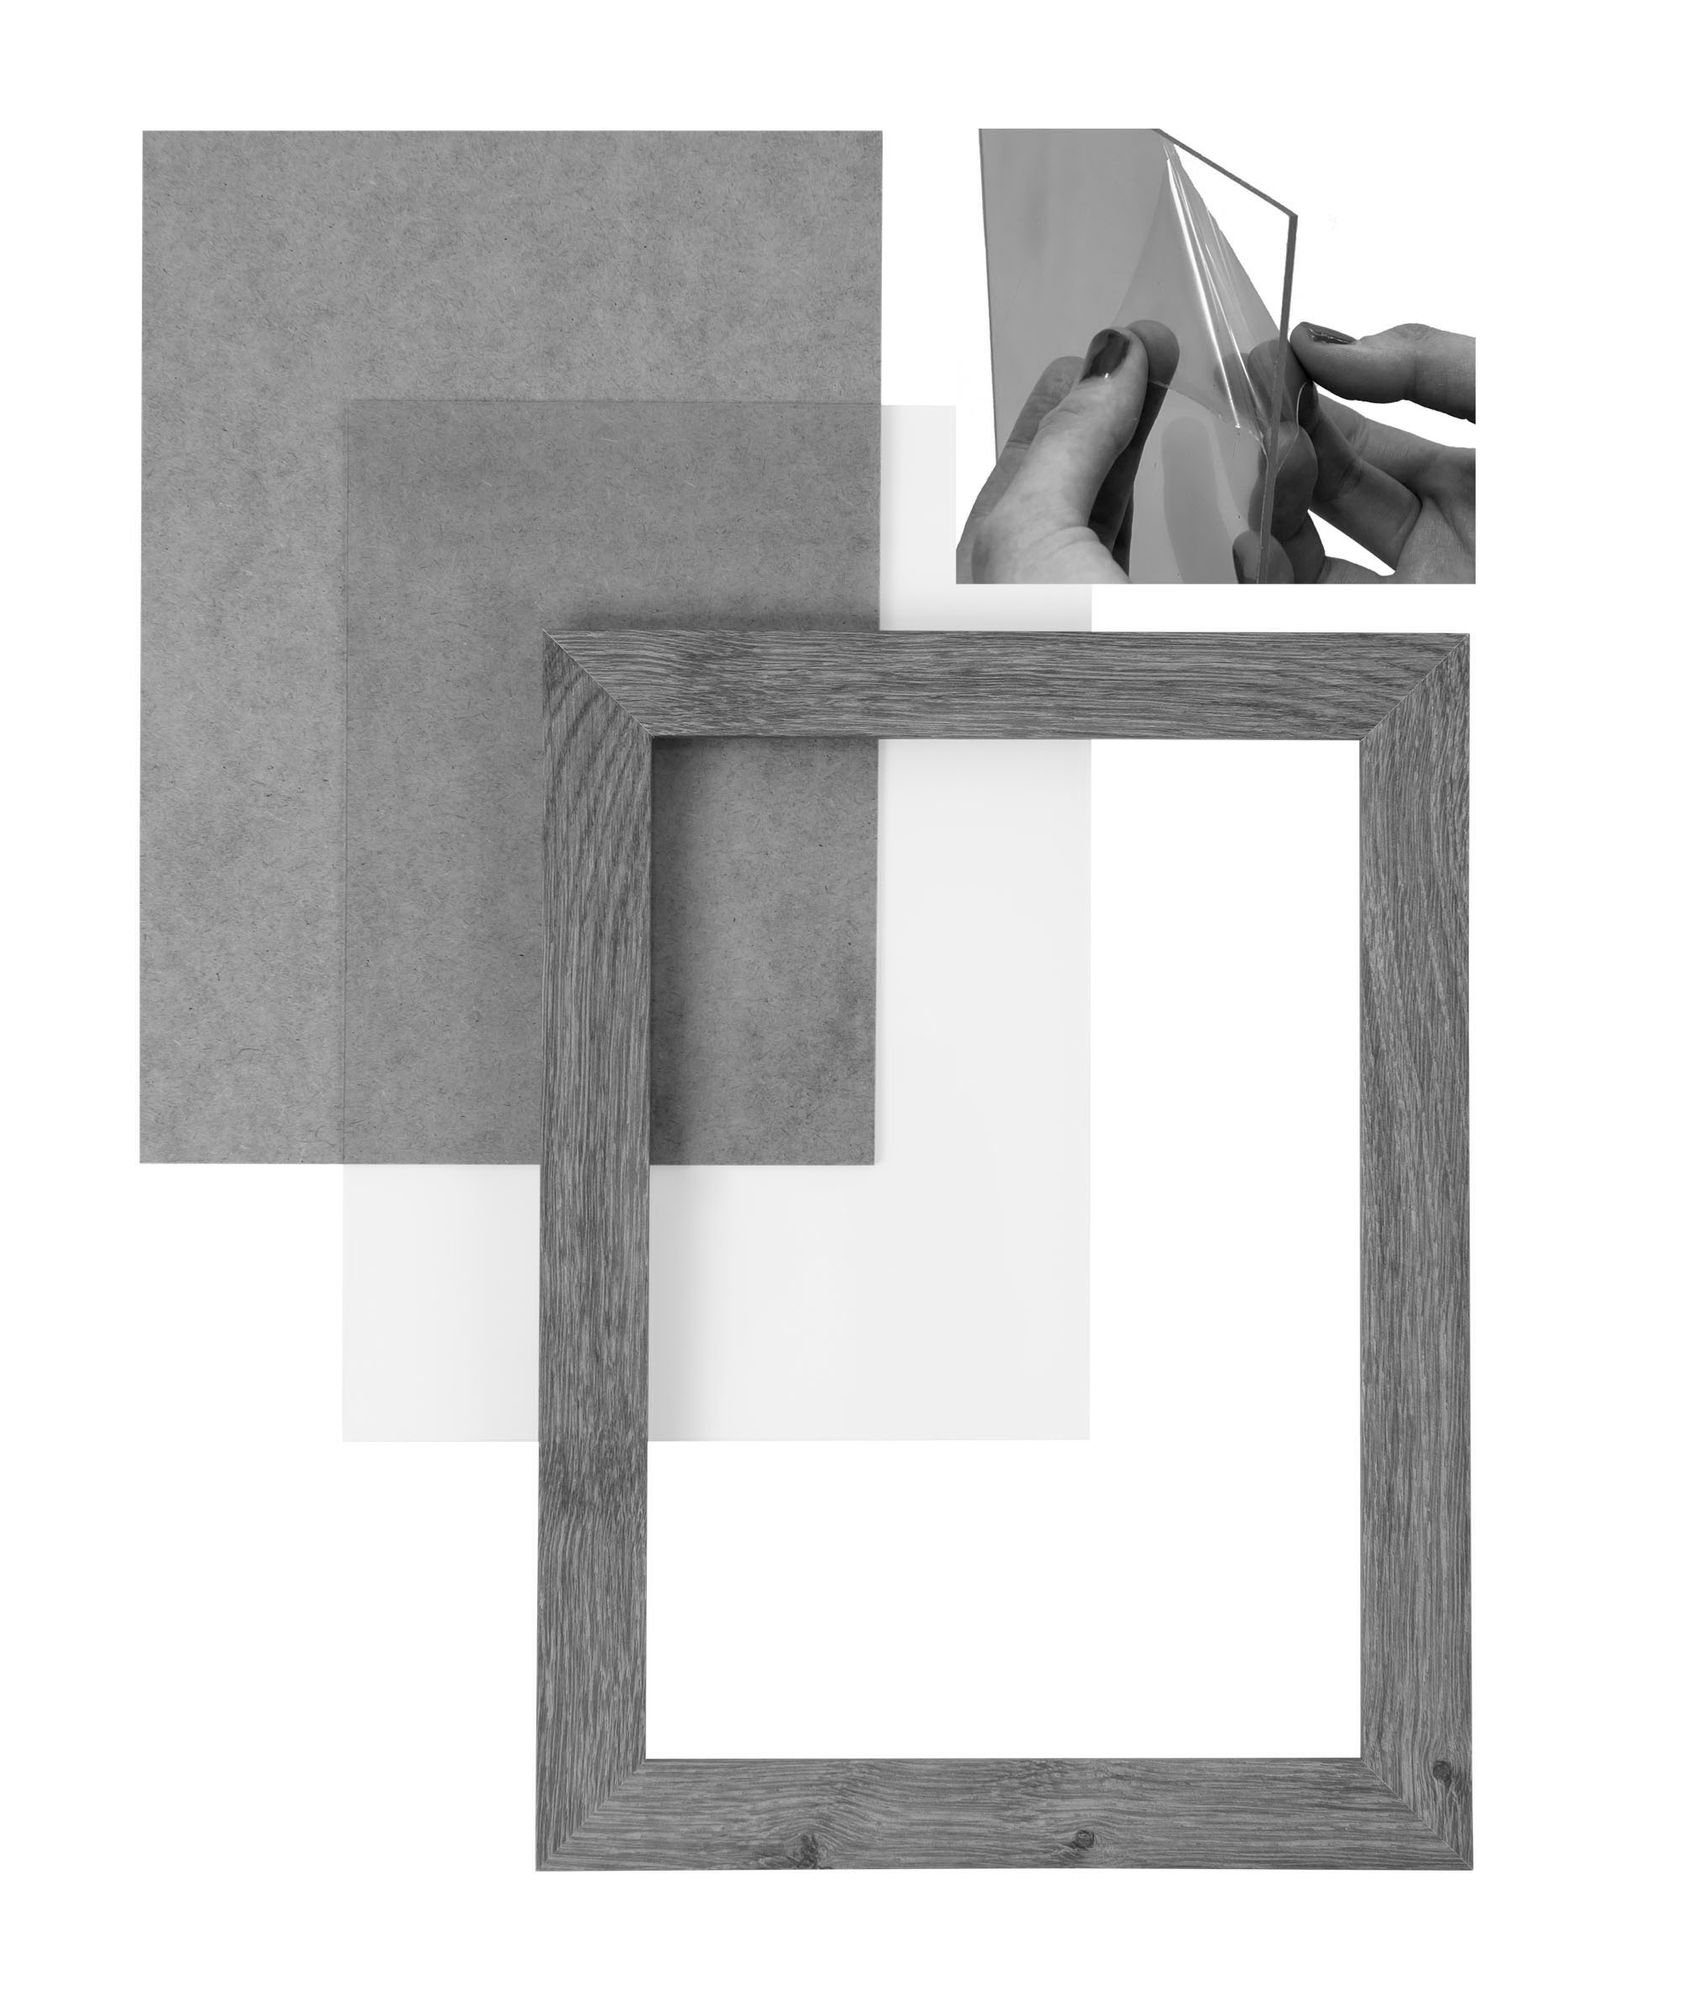 Clamaro Bilderrahmen Bilderrahmen CLAMARO 'Collage' FSC® gebürstet nach Moderner Maß Aufhänger Rückwand 17x23 Holz Rahmen Acrylglas, eckiger in MDF silber inkl. und handgefertigt